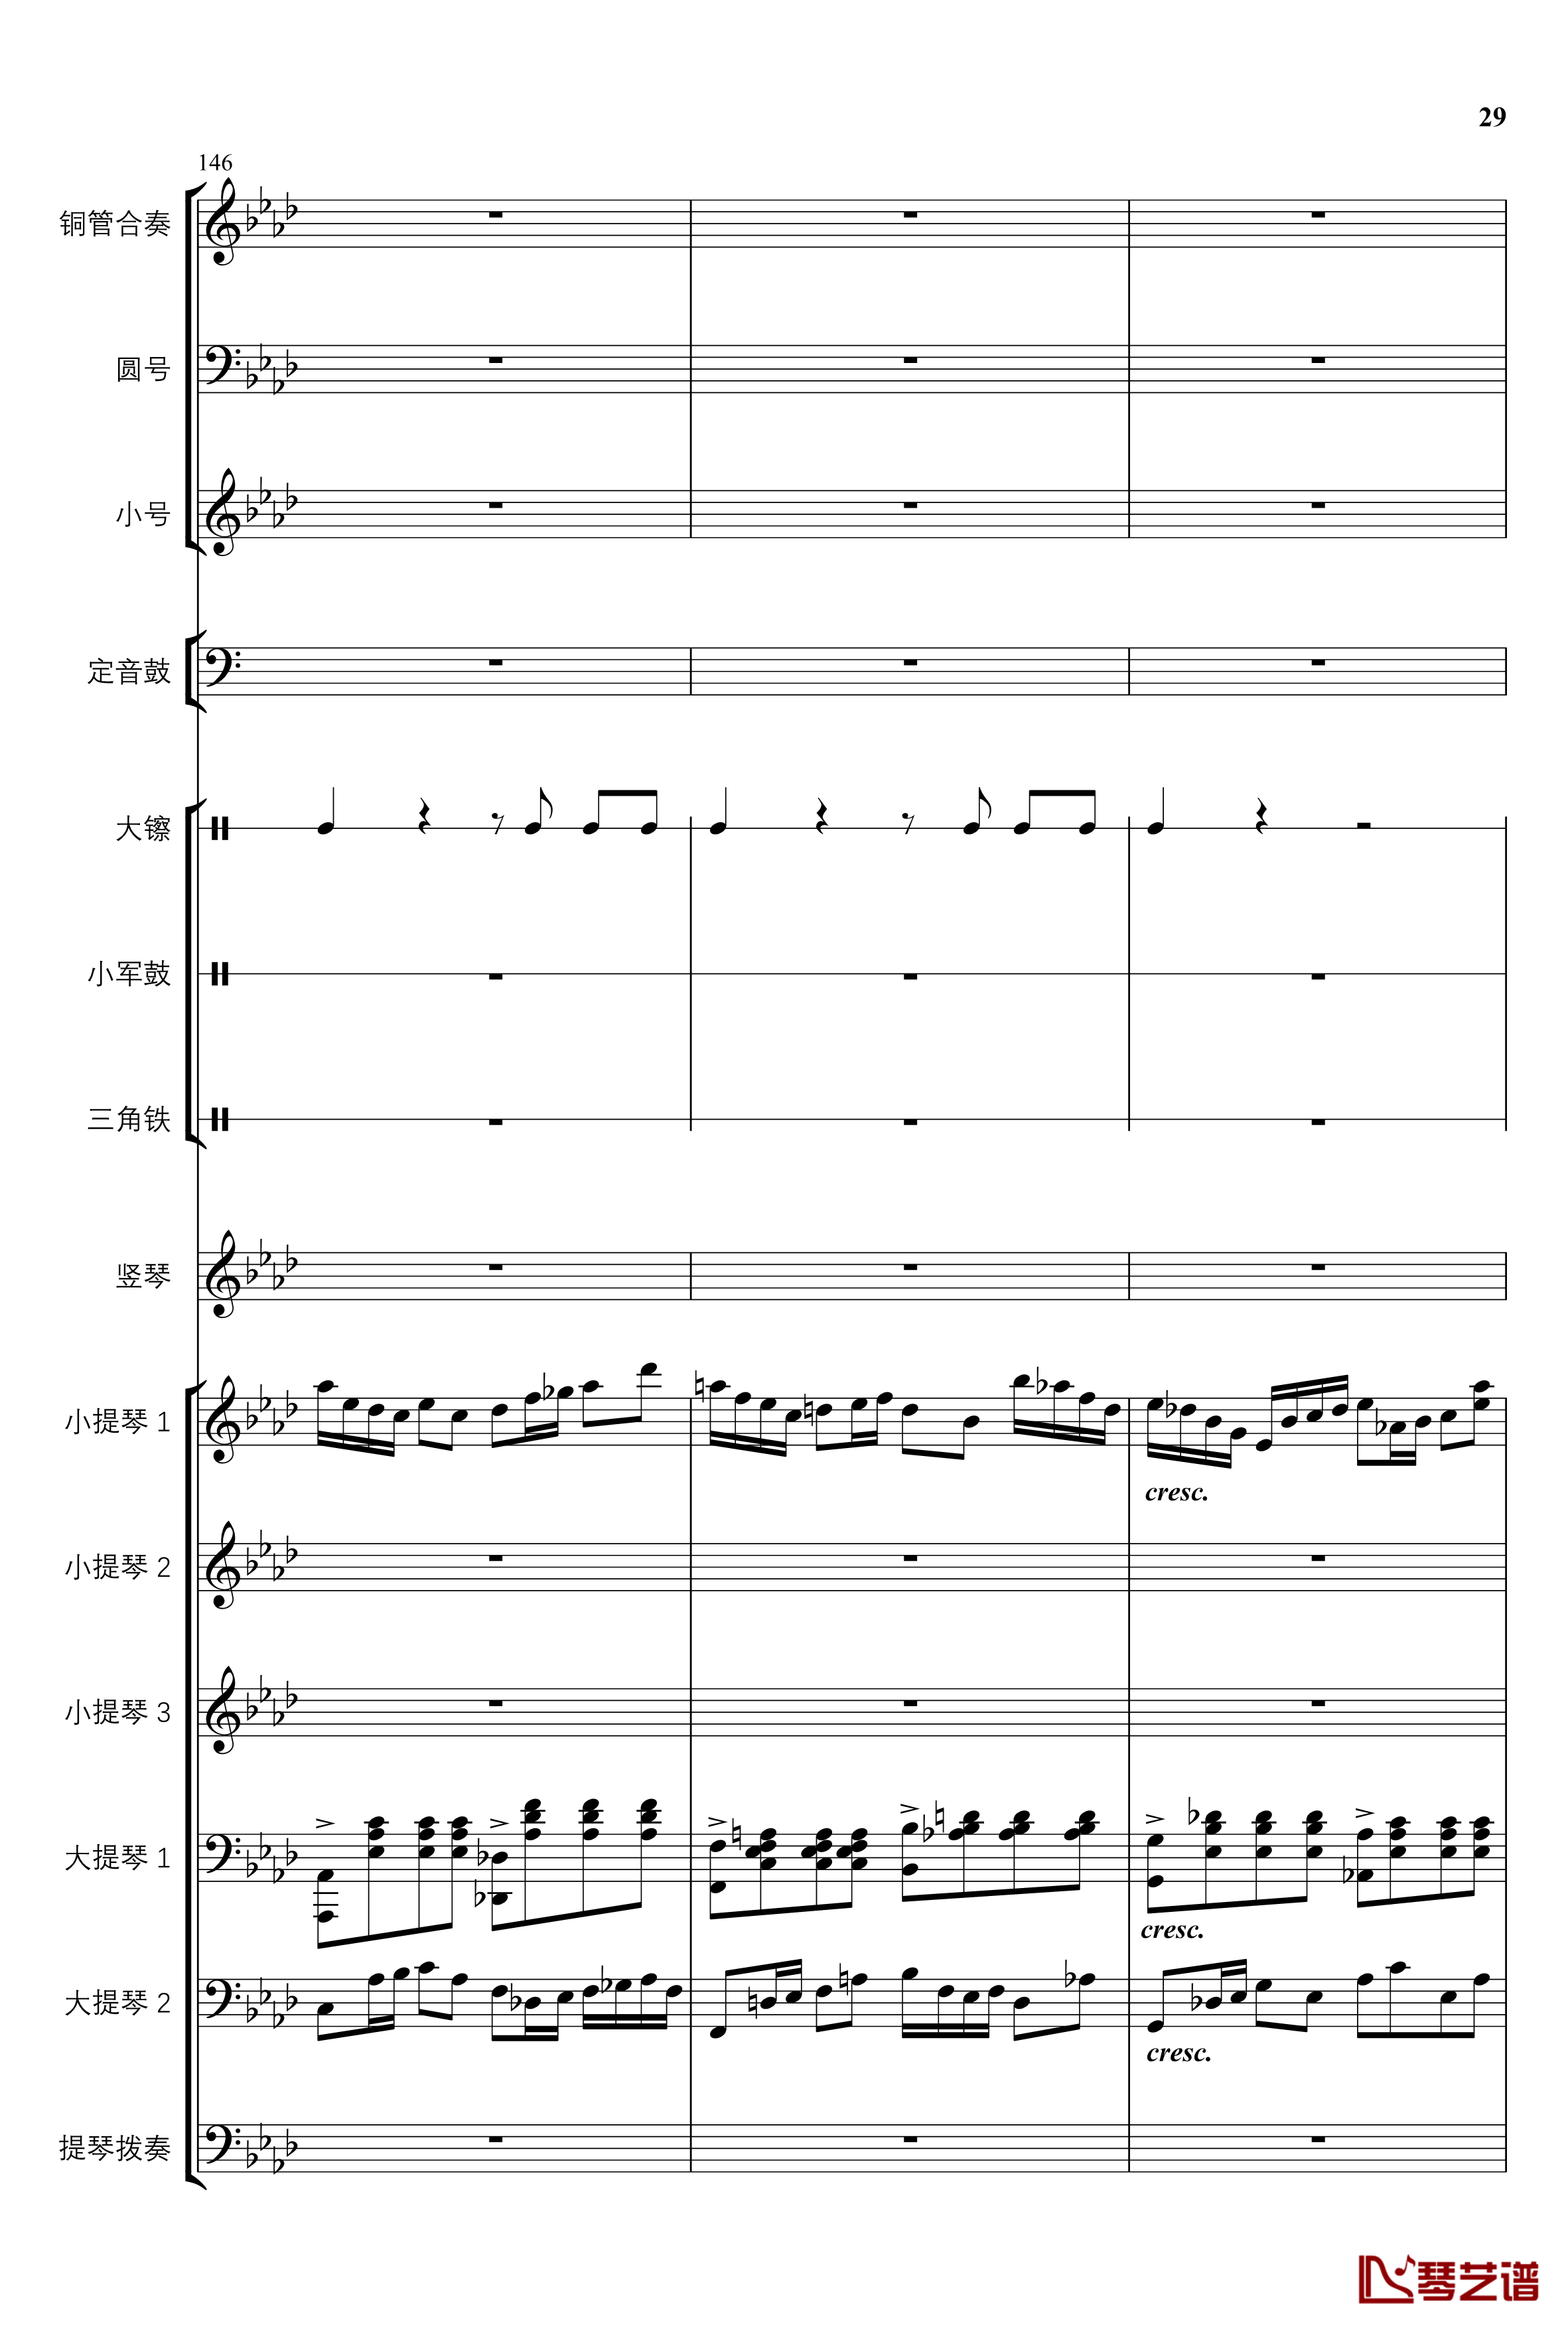 2013考试周的叙事曲钢琴谱-管弦乐重编曲版-江畔新绿29